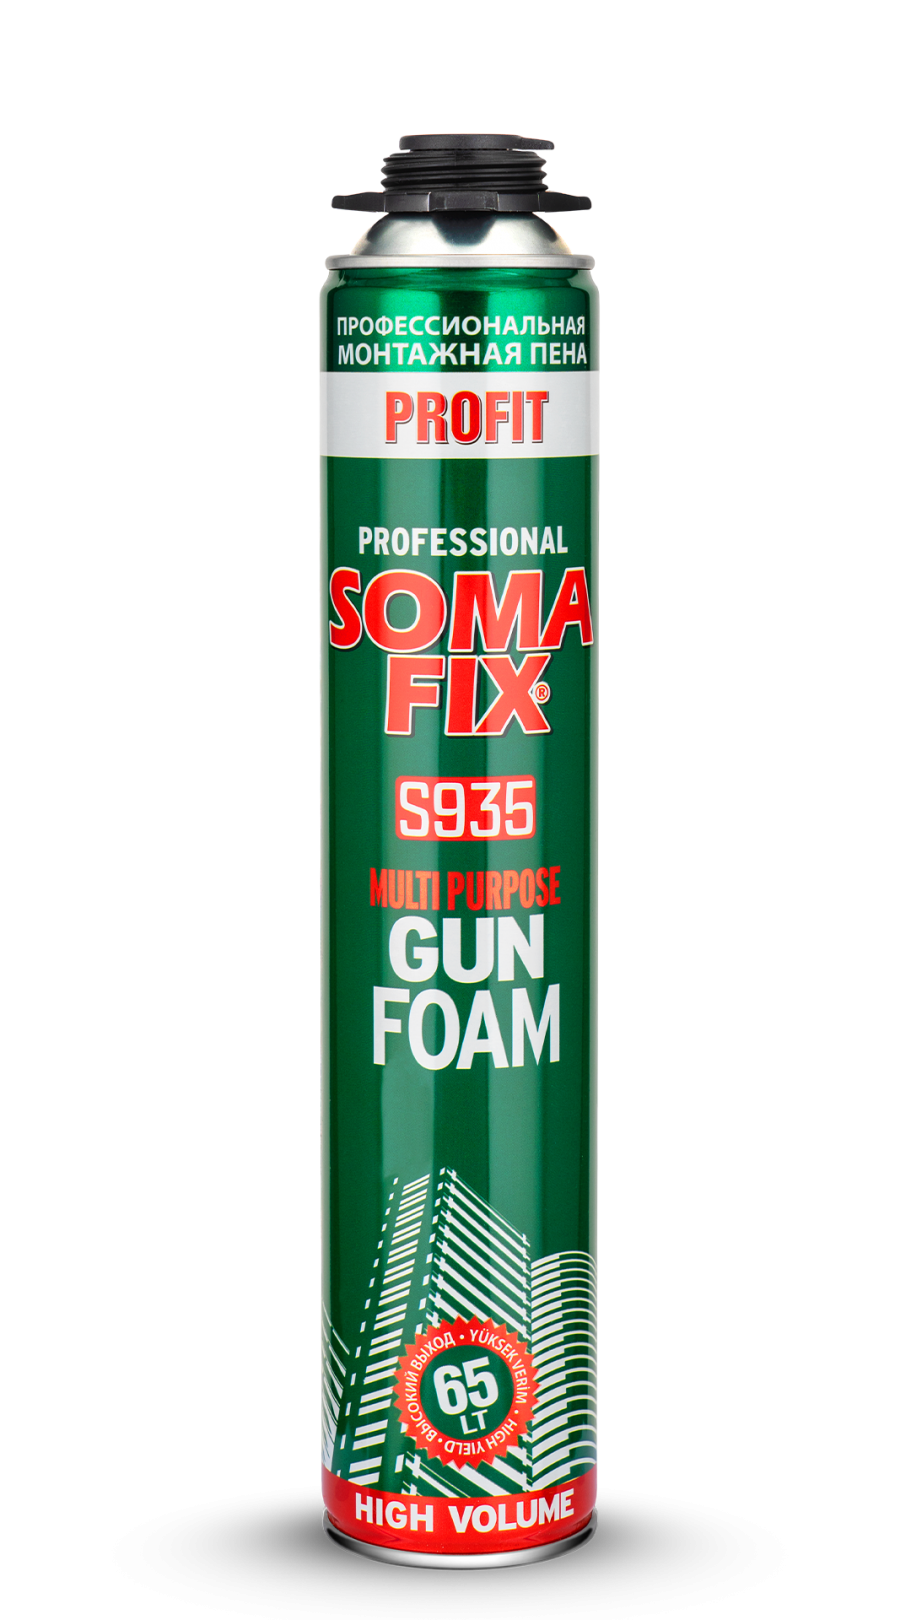 Пена монтажная профессиональная SOMA FIX Profit 800 мл (65 л выход), всесезонная